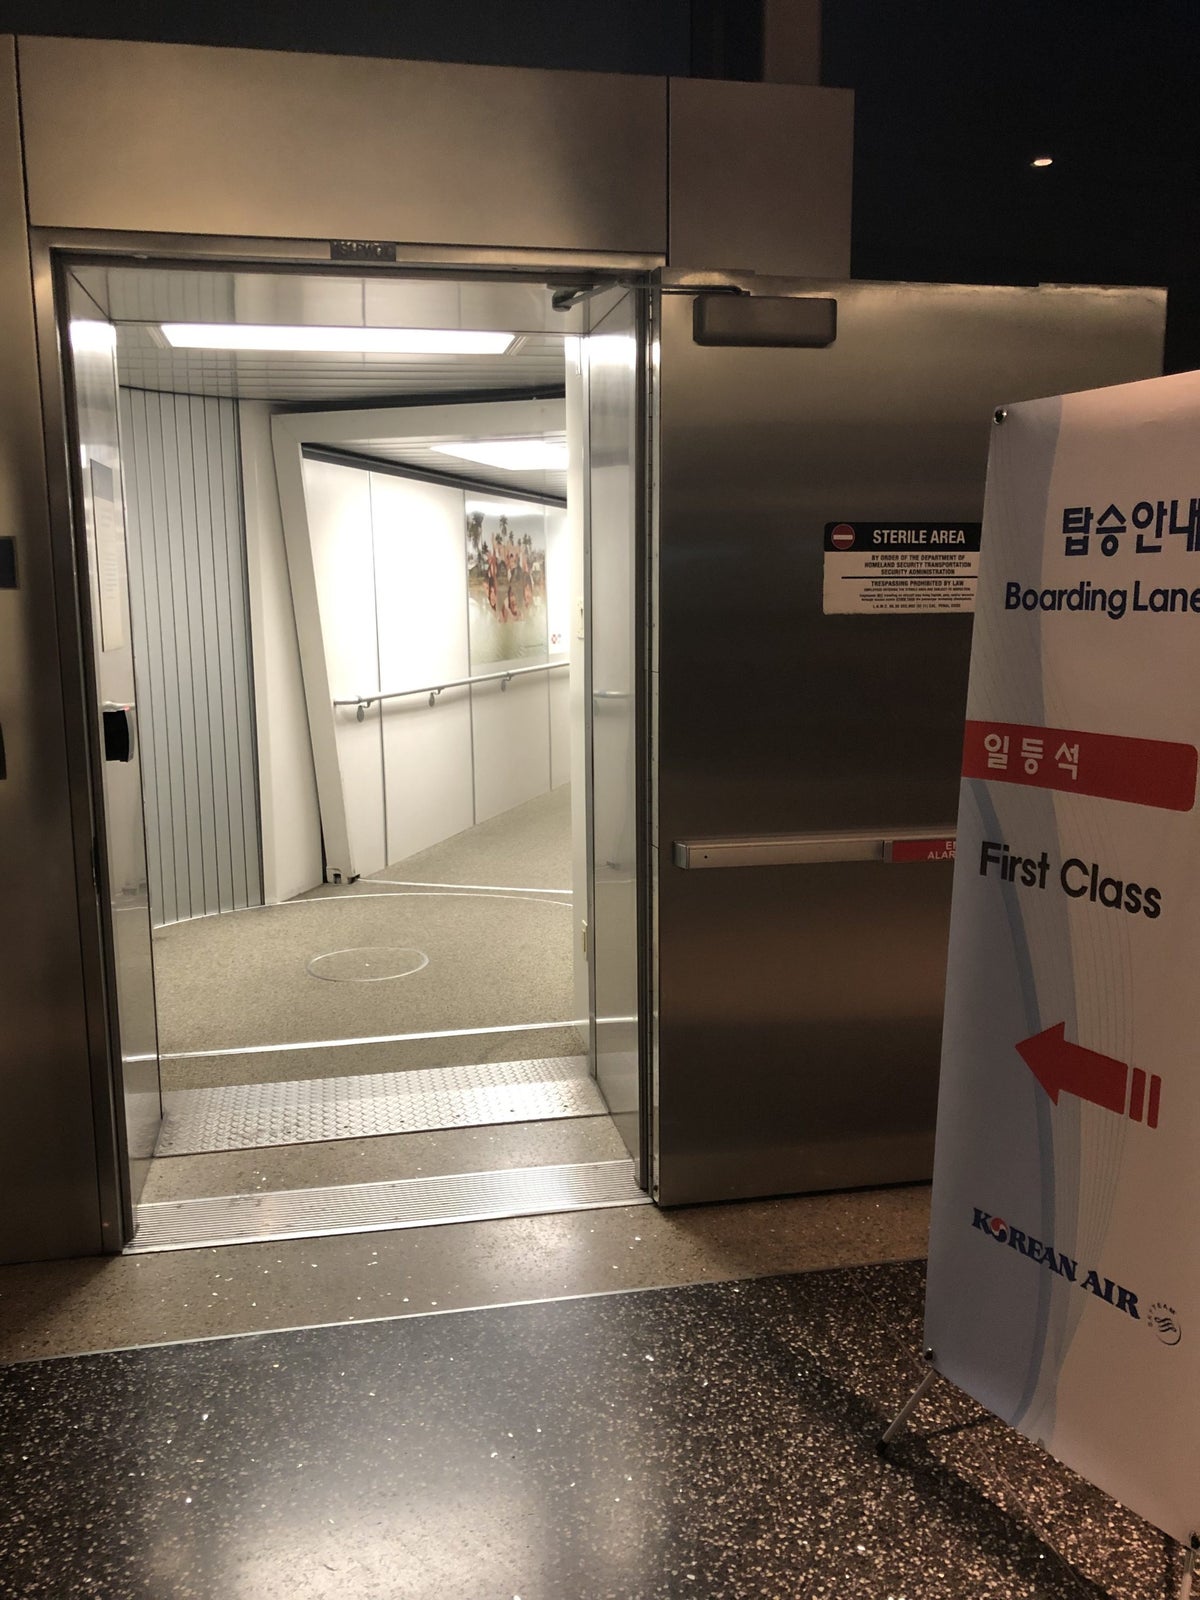 Korean Air first class boarding door